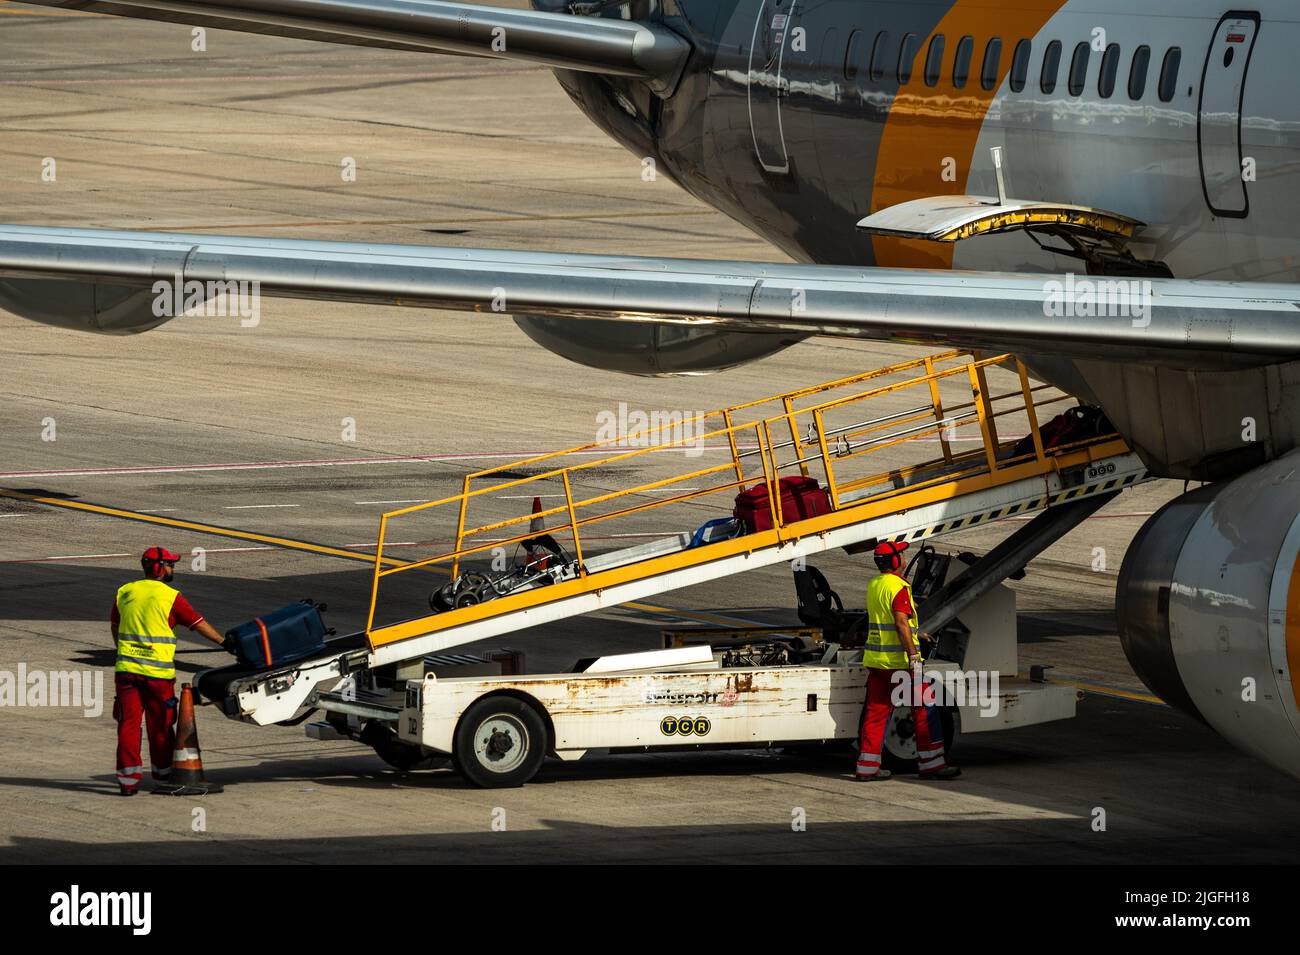 Auf dem Flughafen Cesar Manrique auf Lanzarote werden Flughafenmitarbeiter gesehen, wie sie Gepäck in ein Flugzeug laden. Stockfoto